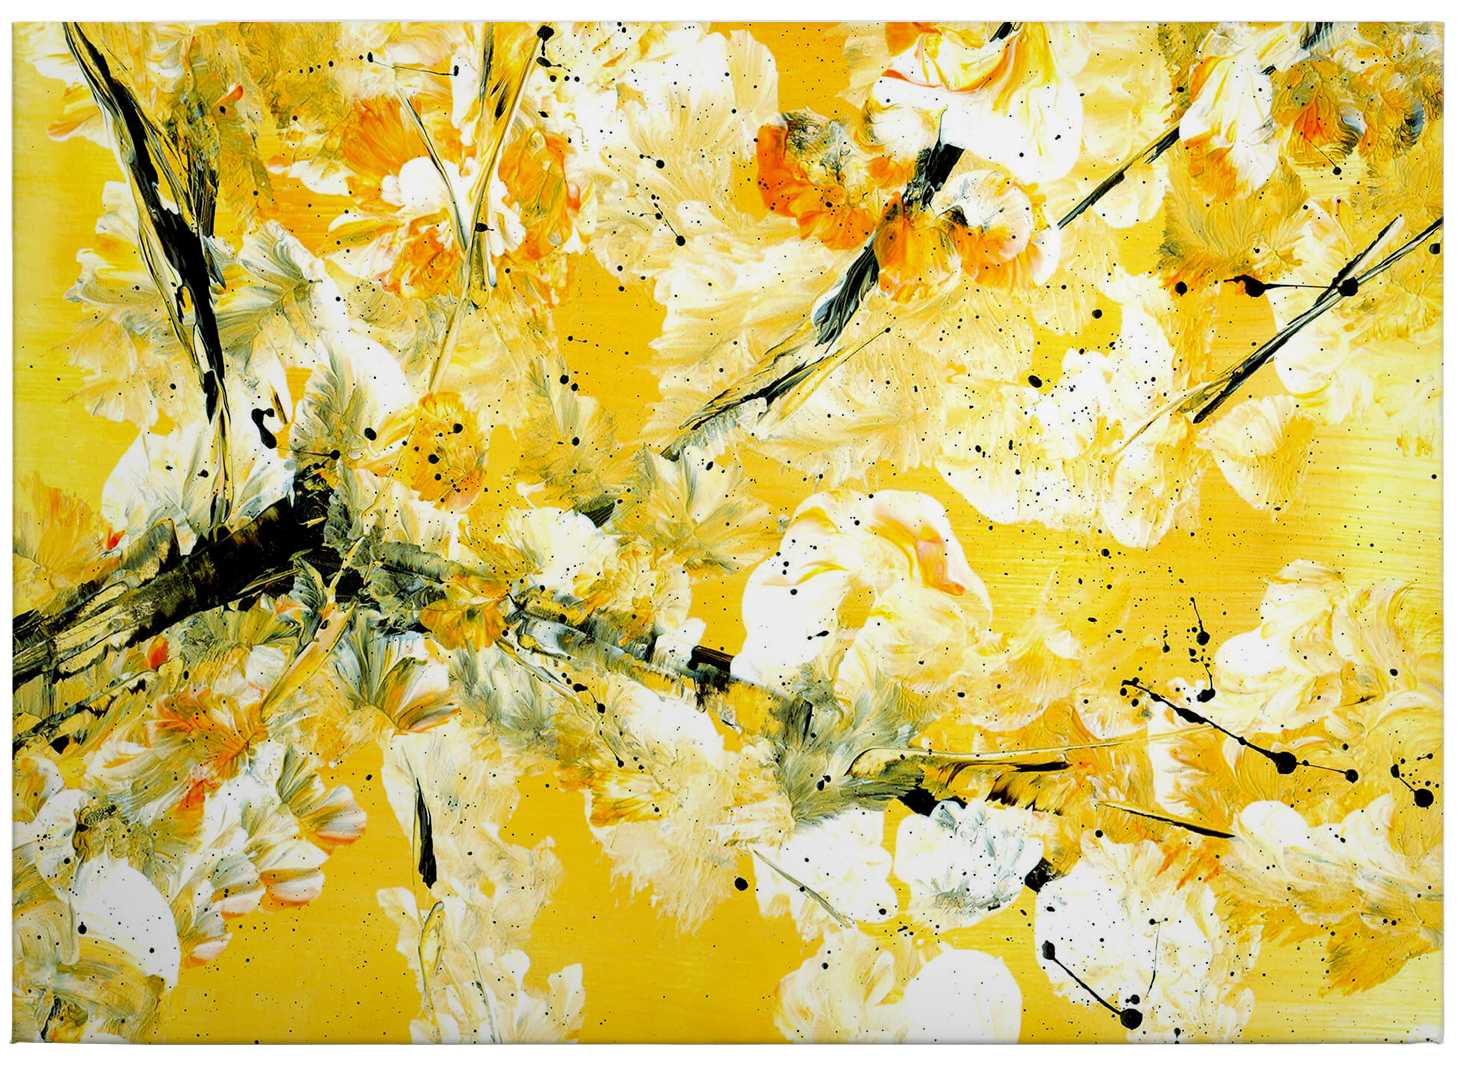             Niksic Canvas schilderij abstract schilderij - 0.70 m x 0.50 m
        